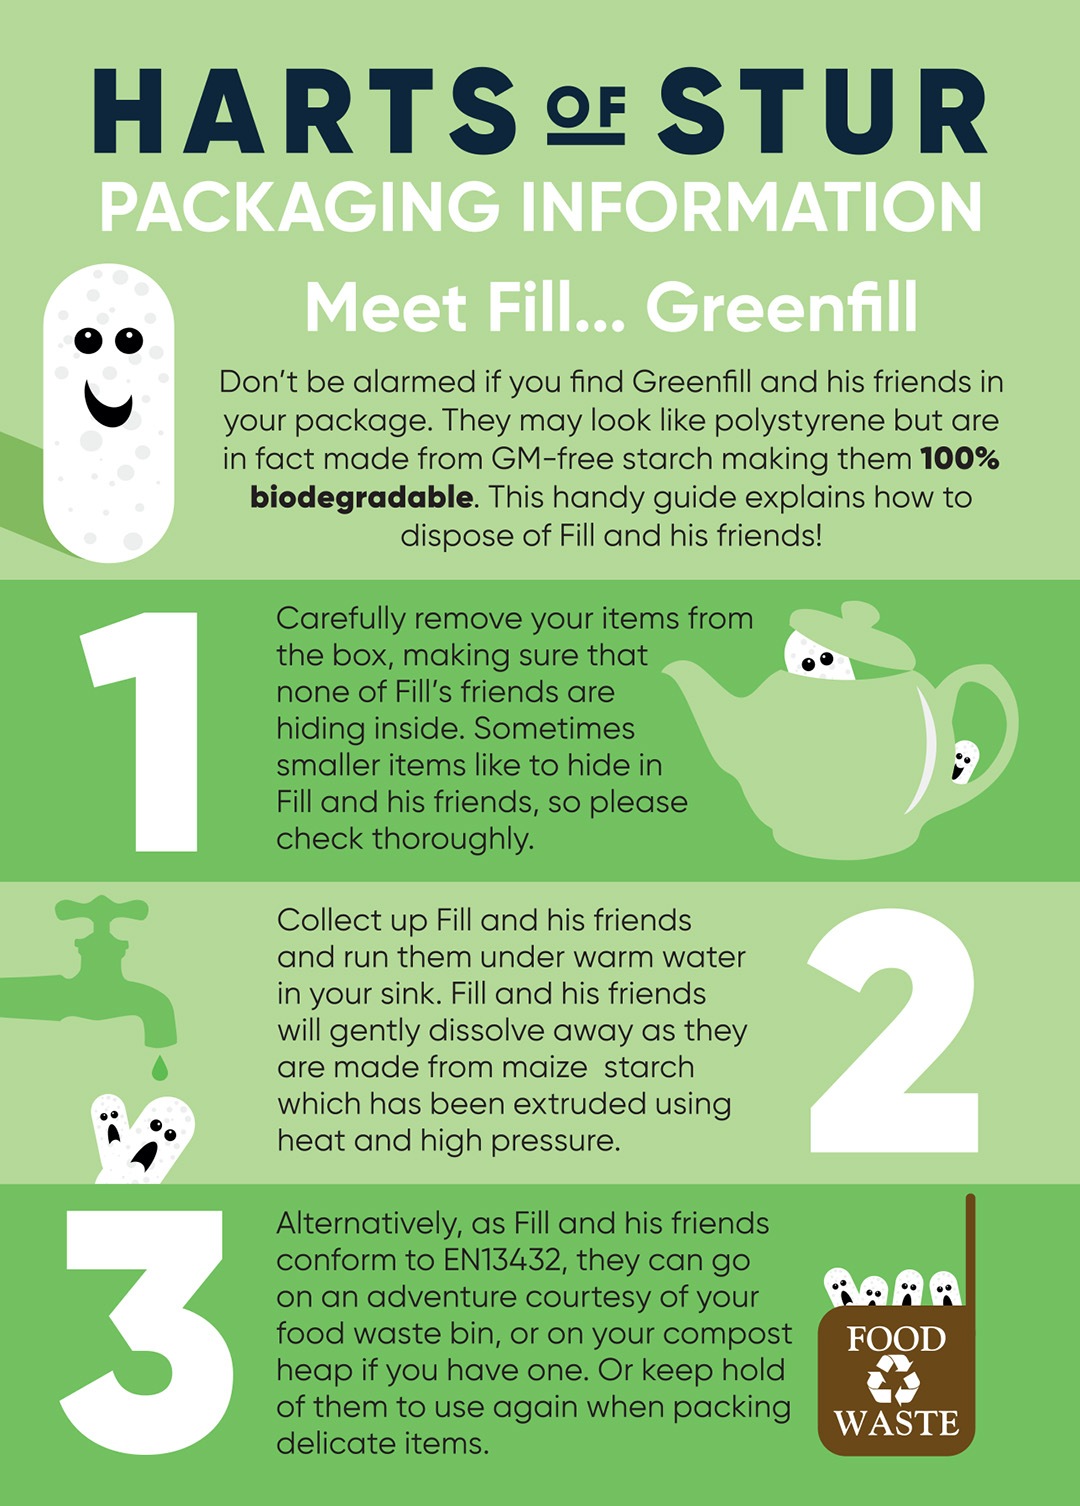 Meet Green Fill